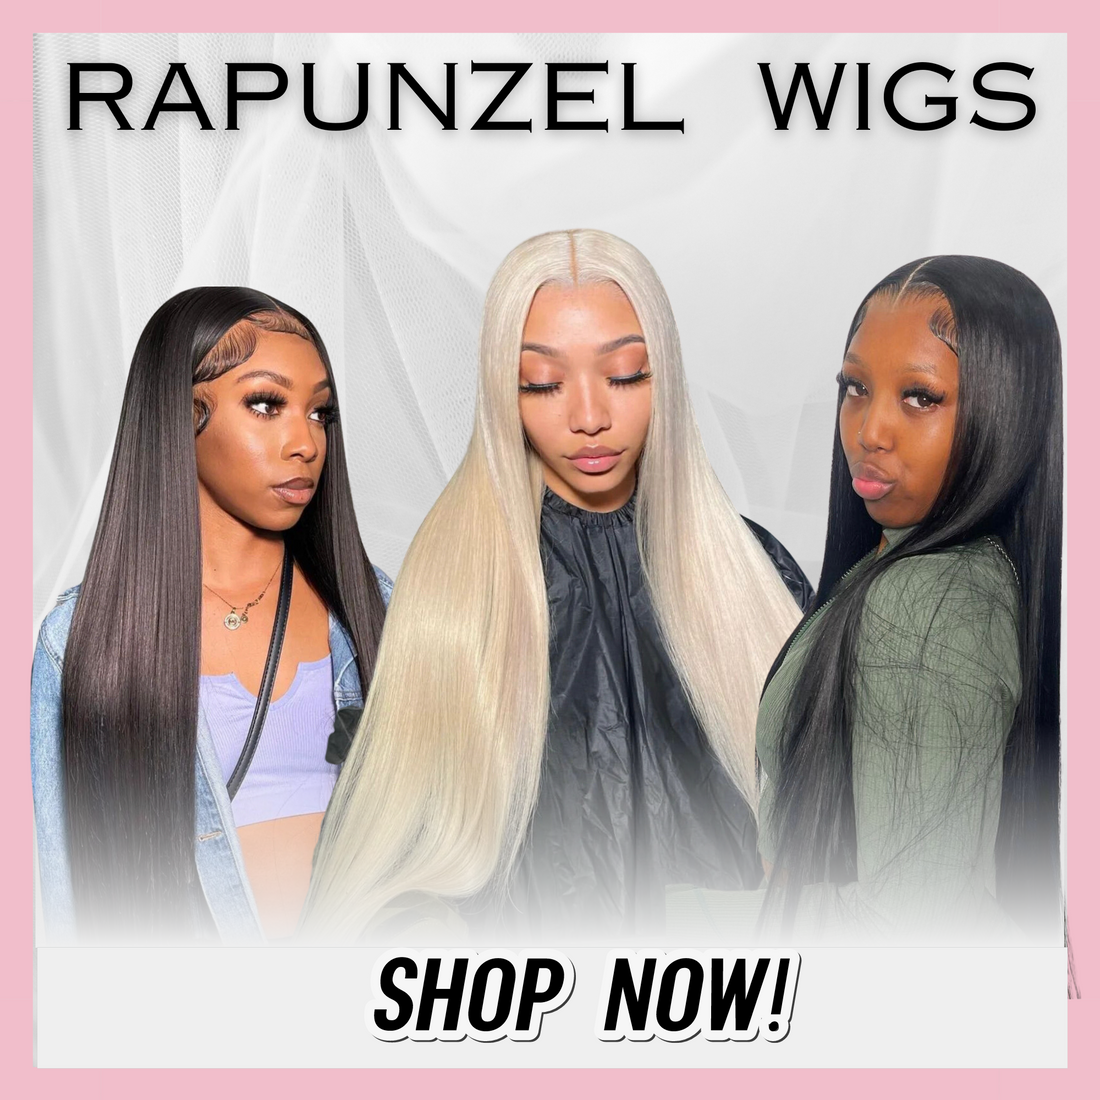  Rapunzel Wigs